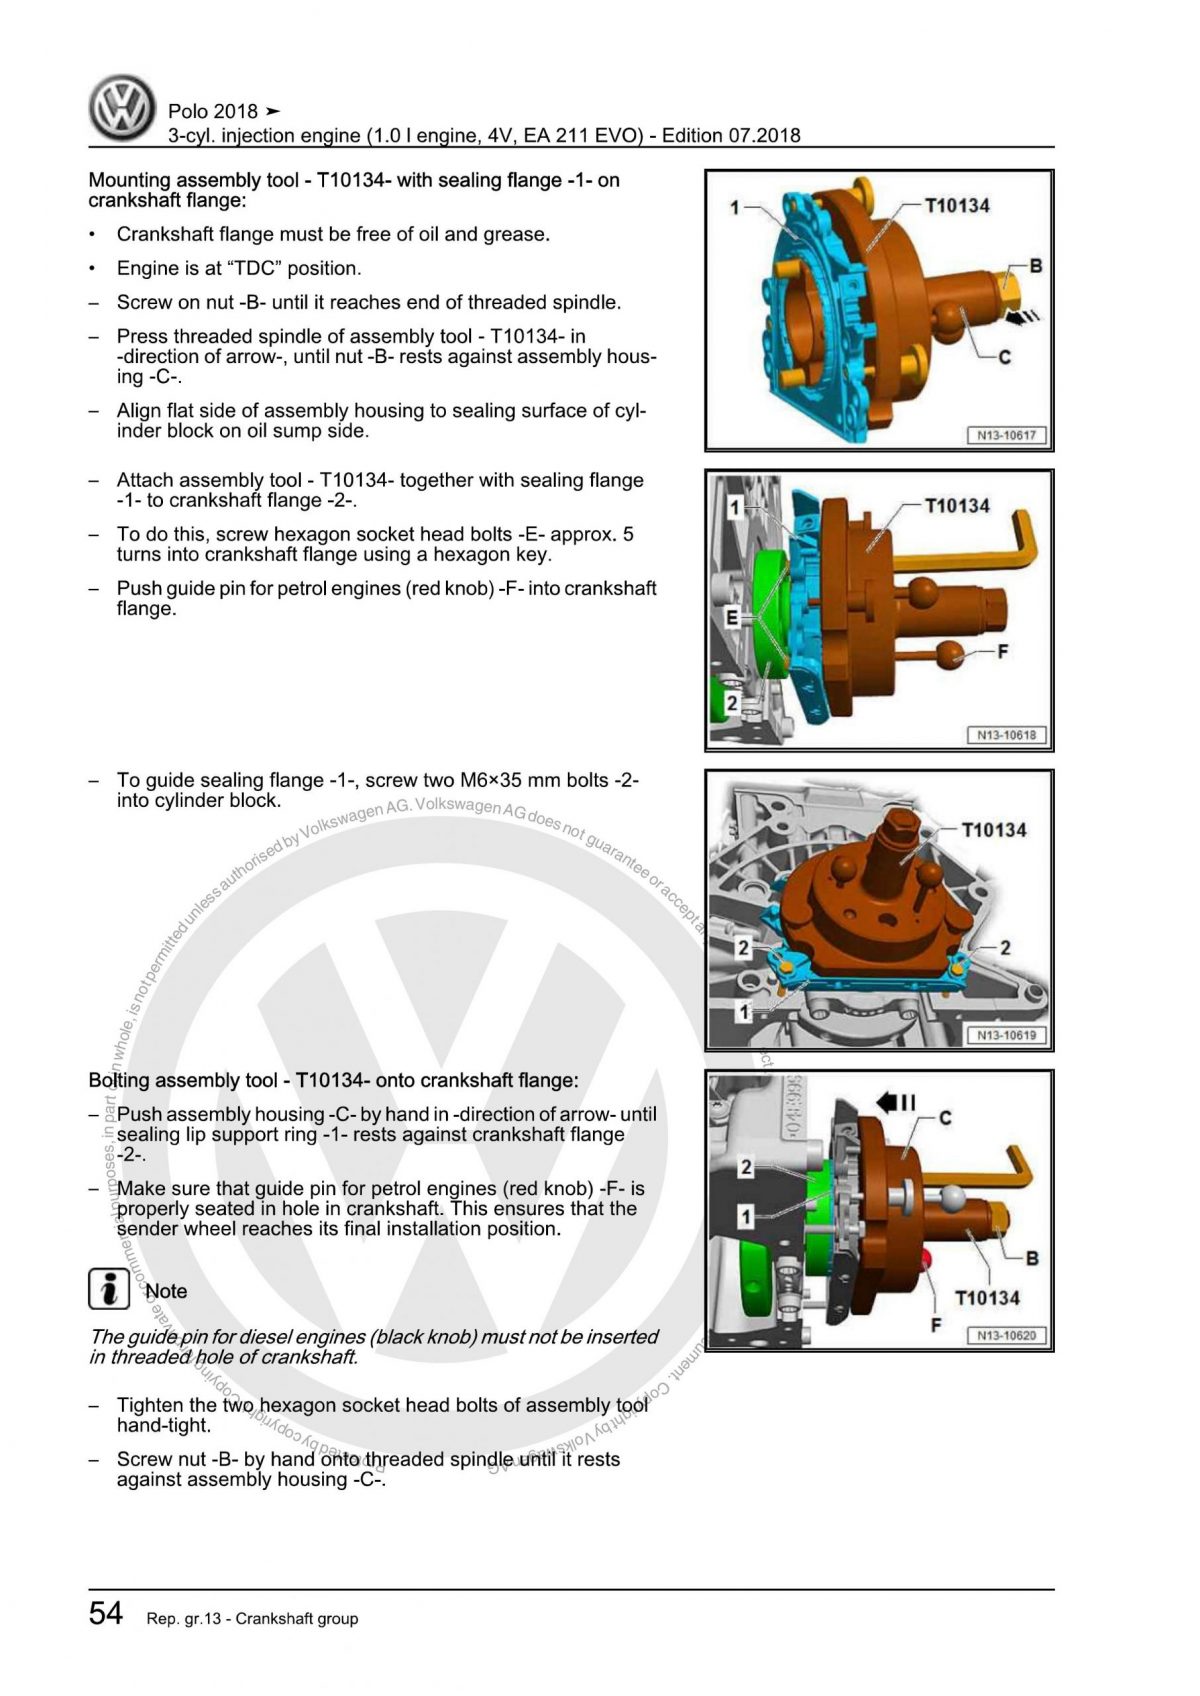 VW 3-cyl. injection engine (1.0 l engine, 4V, EA 211 EVO) OEM Workshop Manual